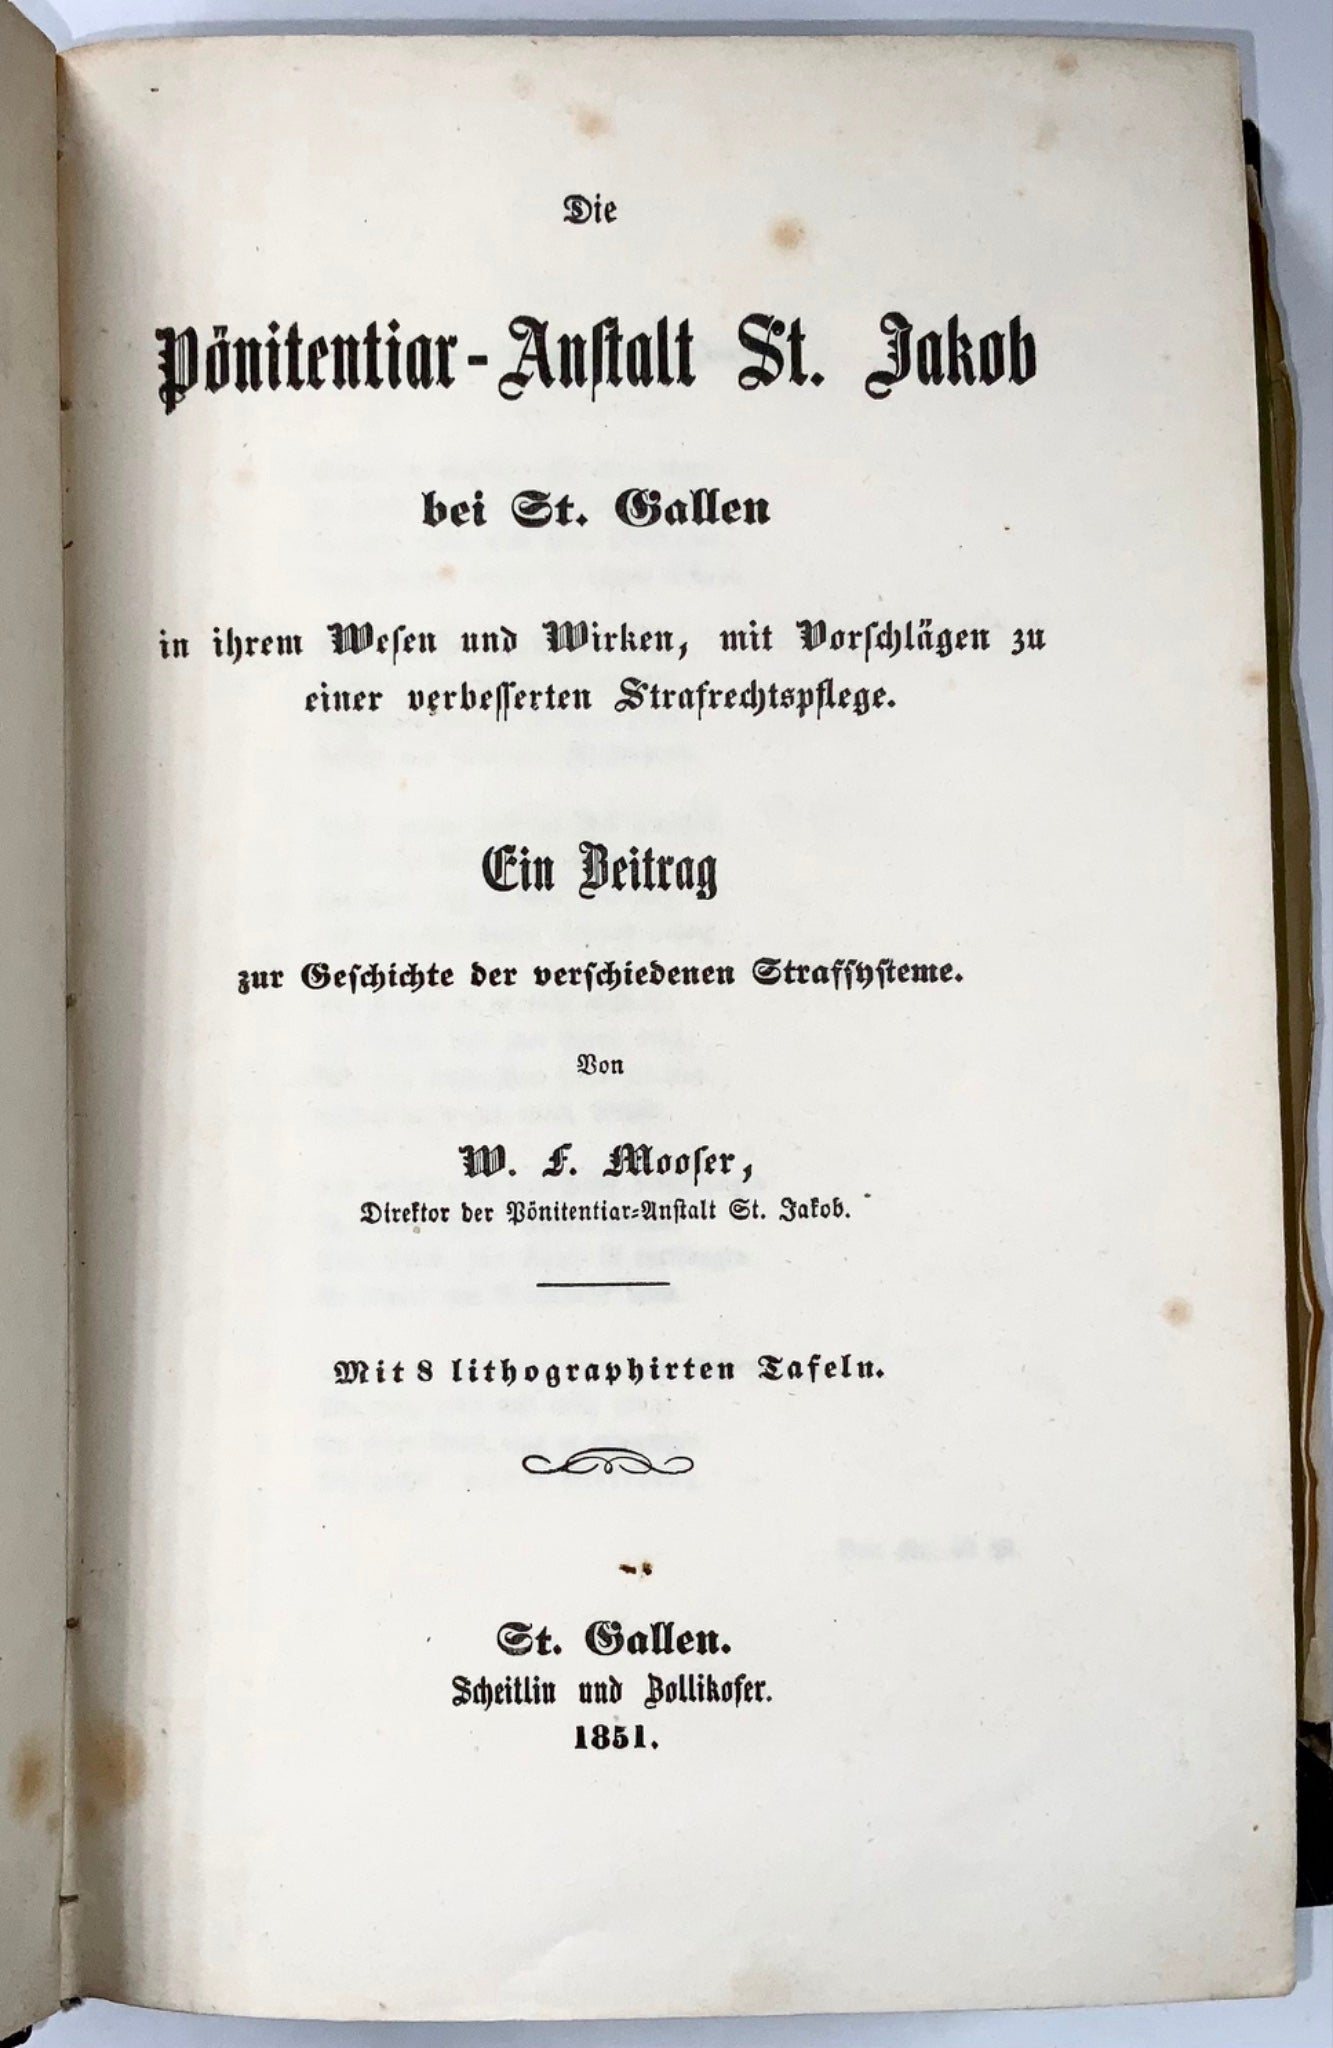 1851 Mooser, travaux sur la réforme pénale et l'architecture pénitentiaire en Suisse